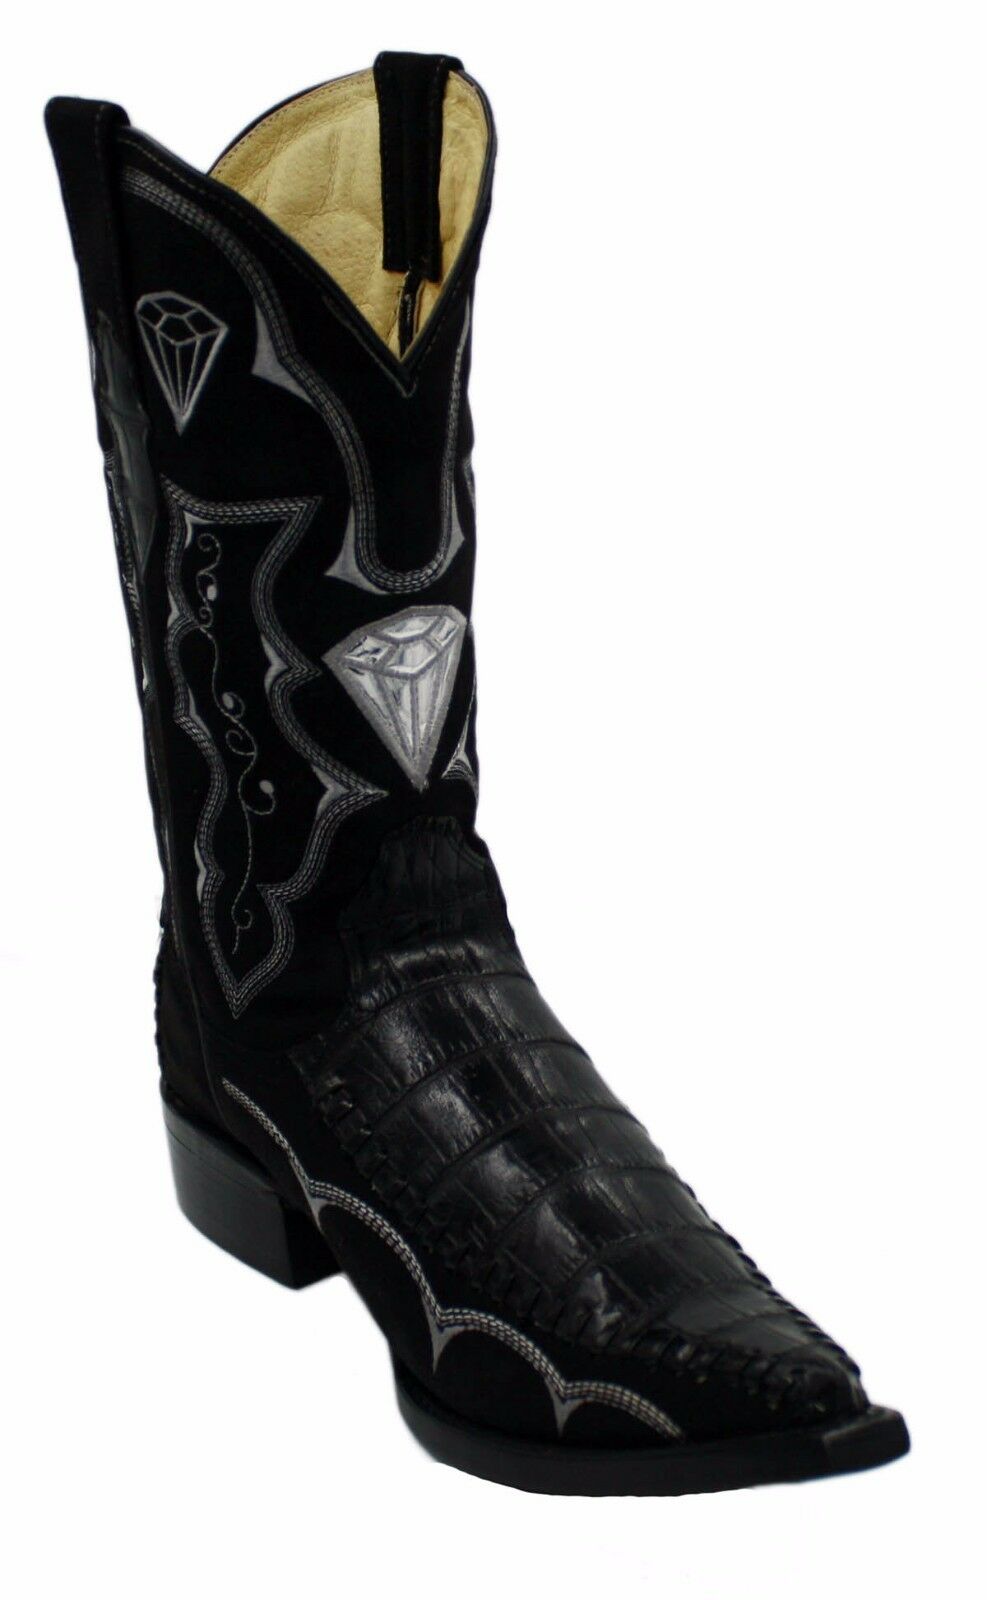 Men's Western Cowboy Crocodile Print Leather Boots CROC IMT 3X 